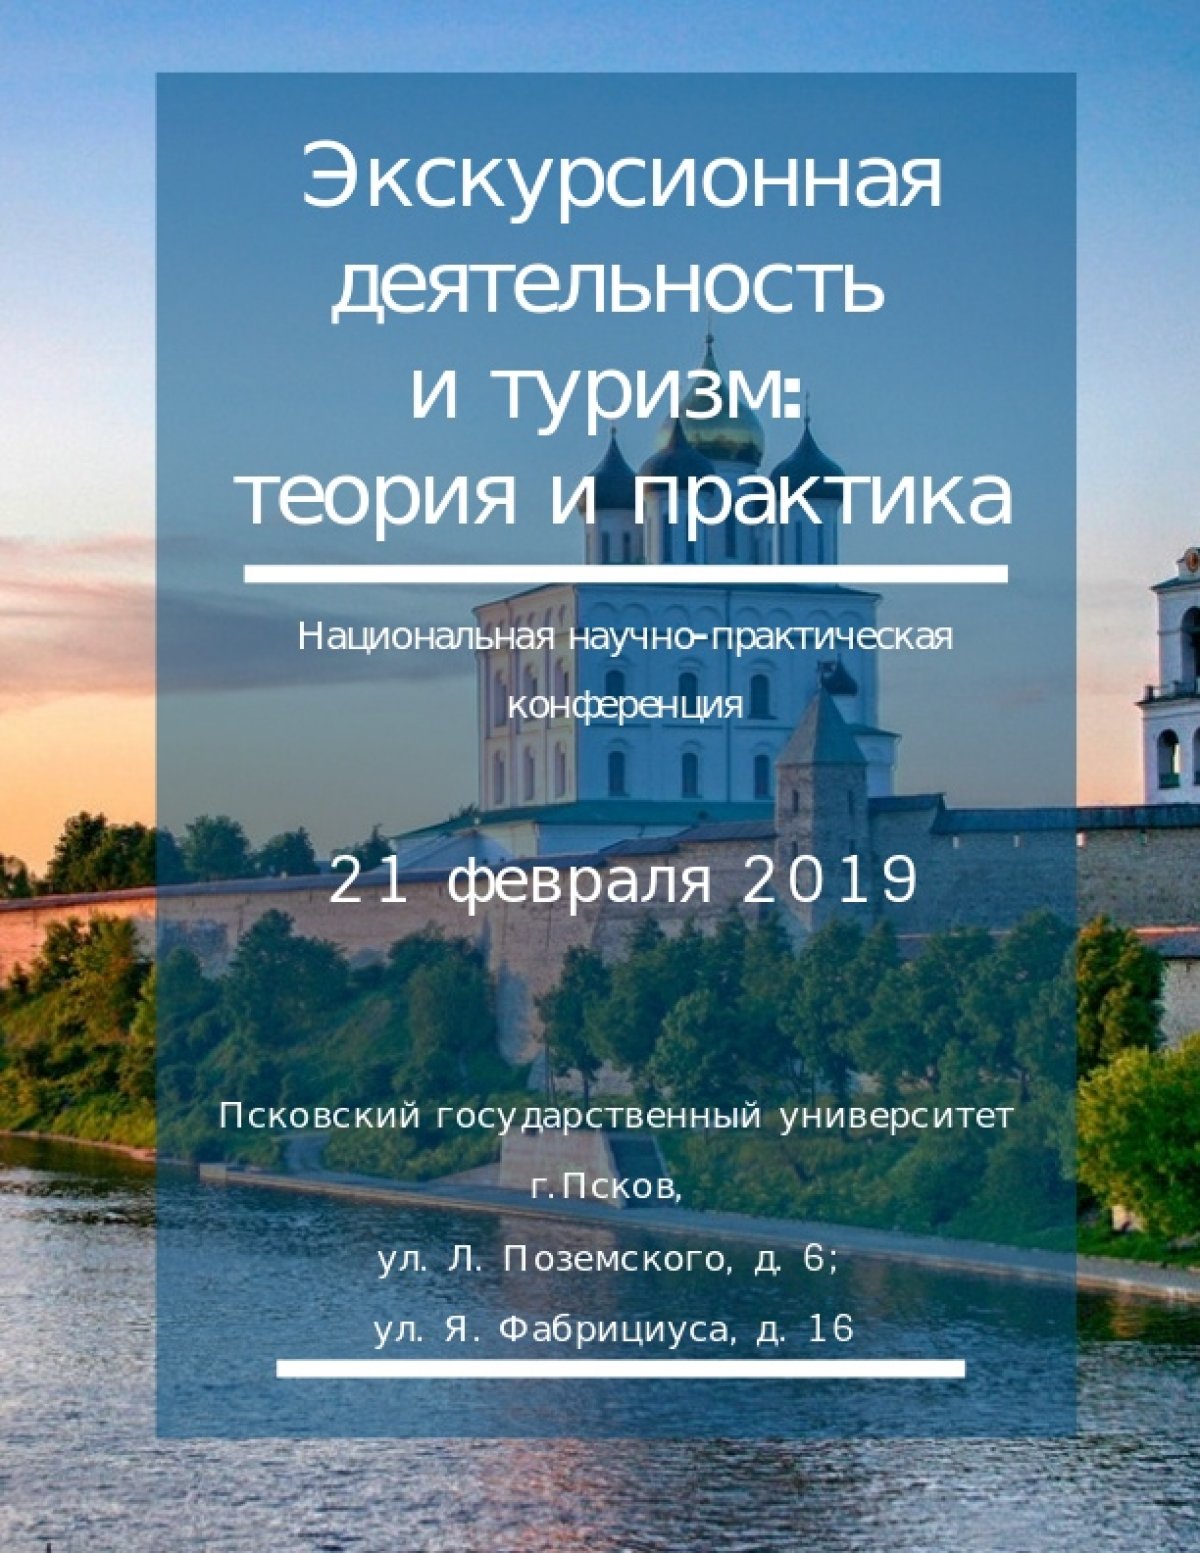 21 февраля 2019 г. в Псковском государственном университете состоится Национальная научно практическая конференция «Экскурсионная деятельность и туризм: теория и практика».